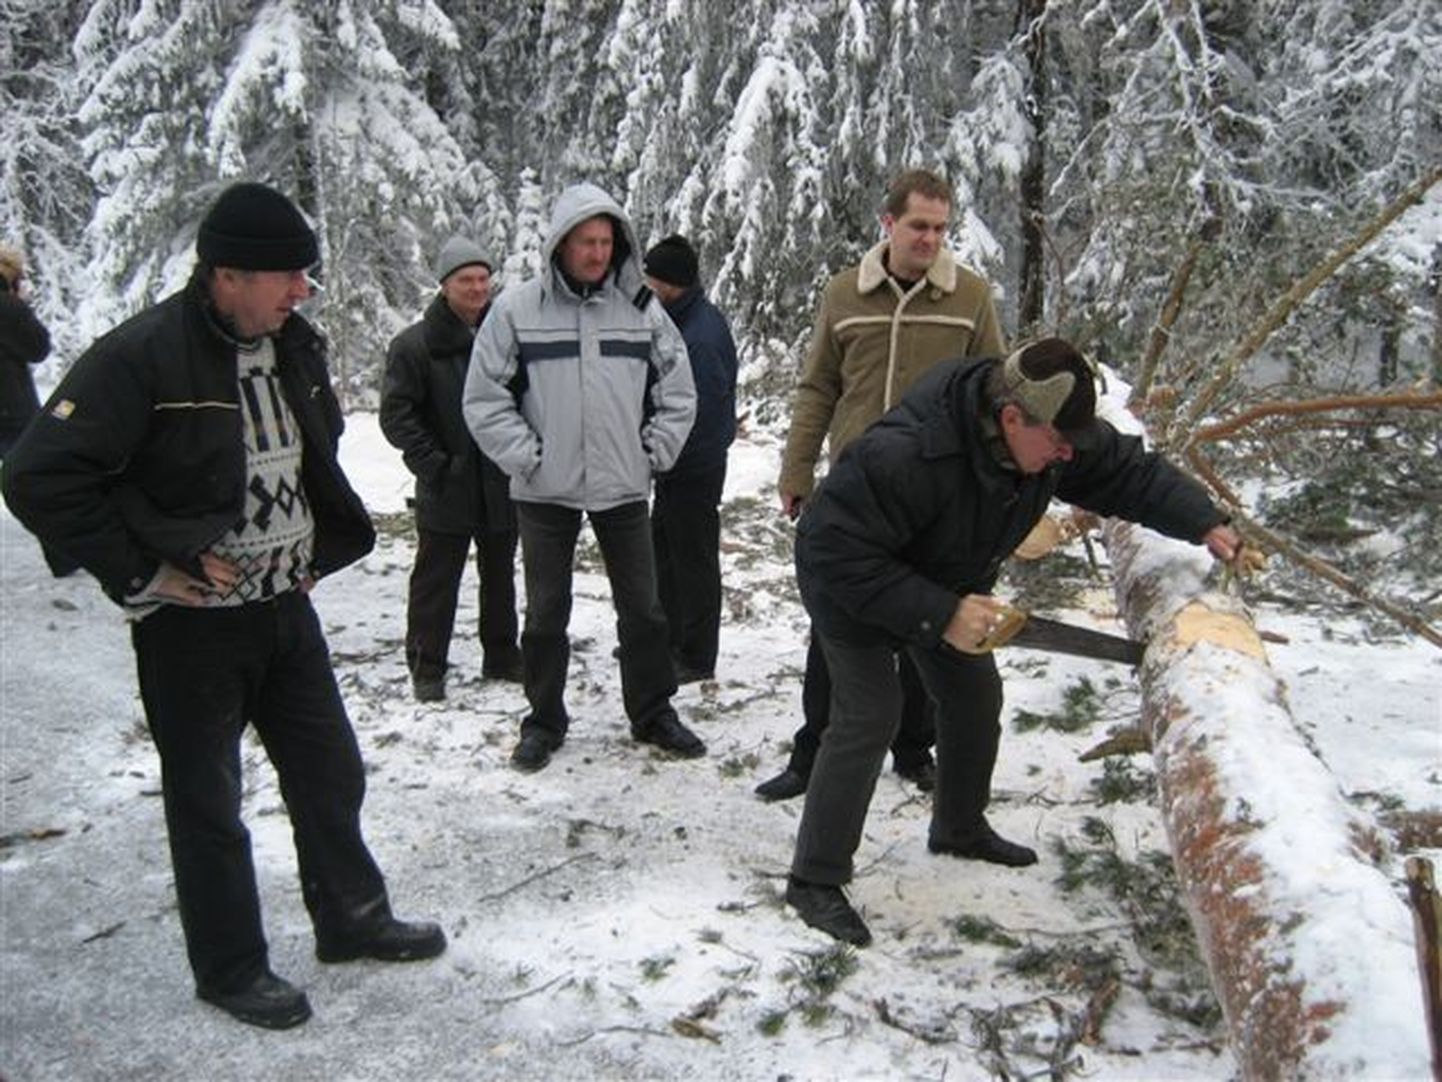 Agaraim saagija oli tallinlane Jevgeni Skvortsov (vasakul) ning alla ei jäänud ka puuskulptuuride meister Heiki Kongi (saeb).